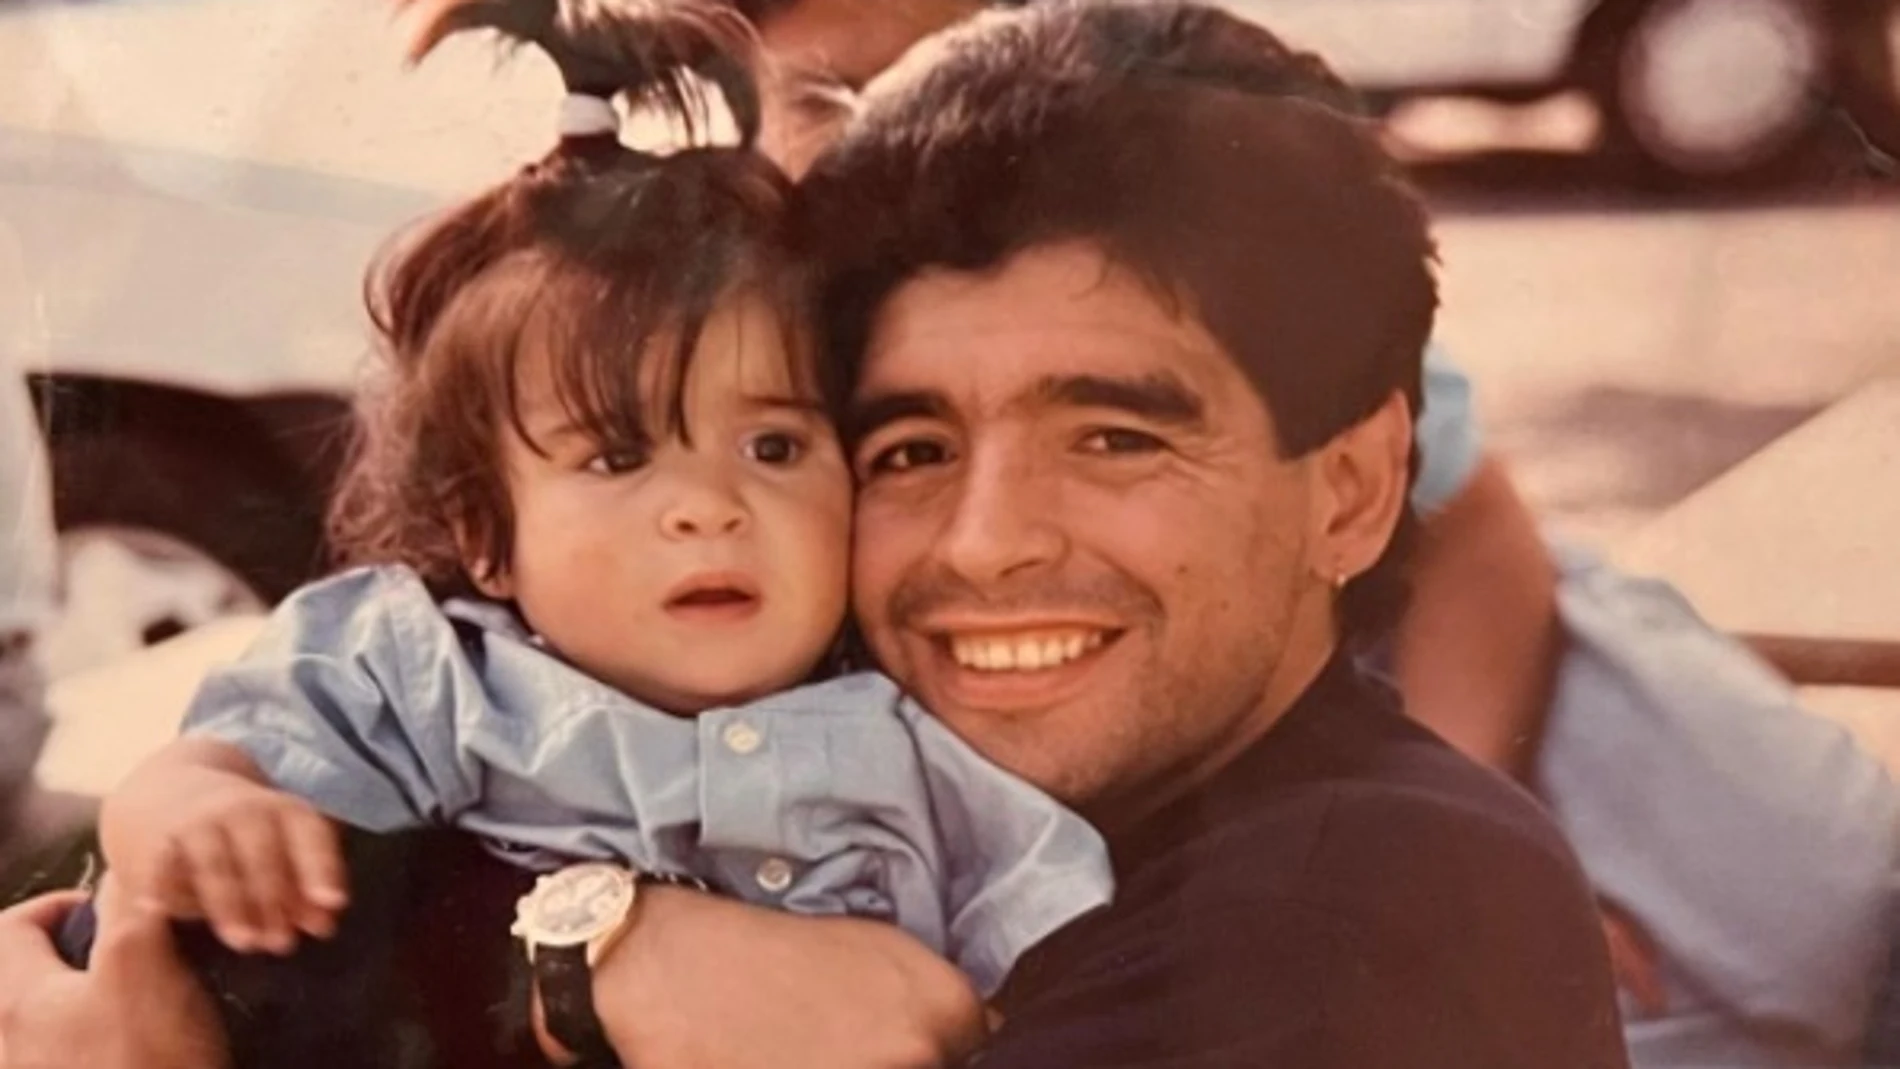 Gianinna Maradona y Diego